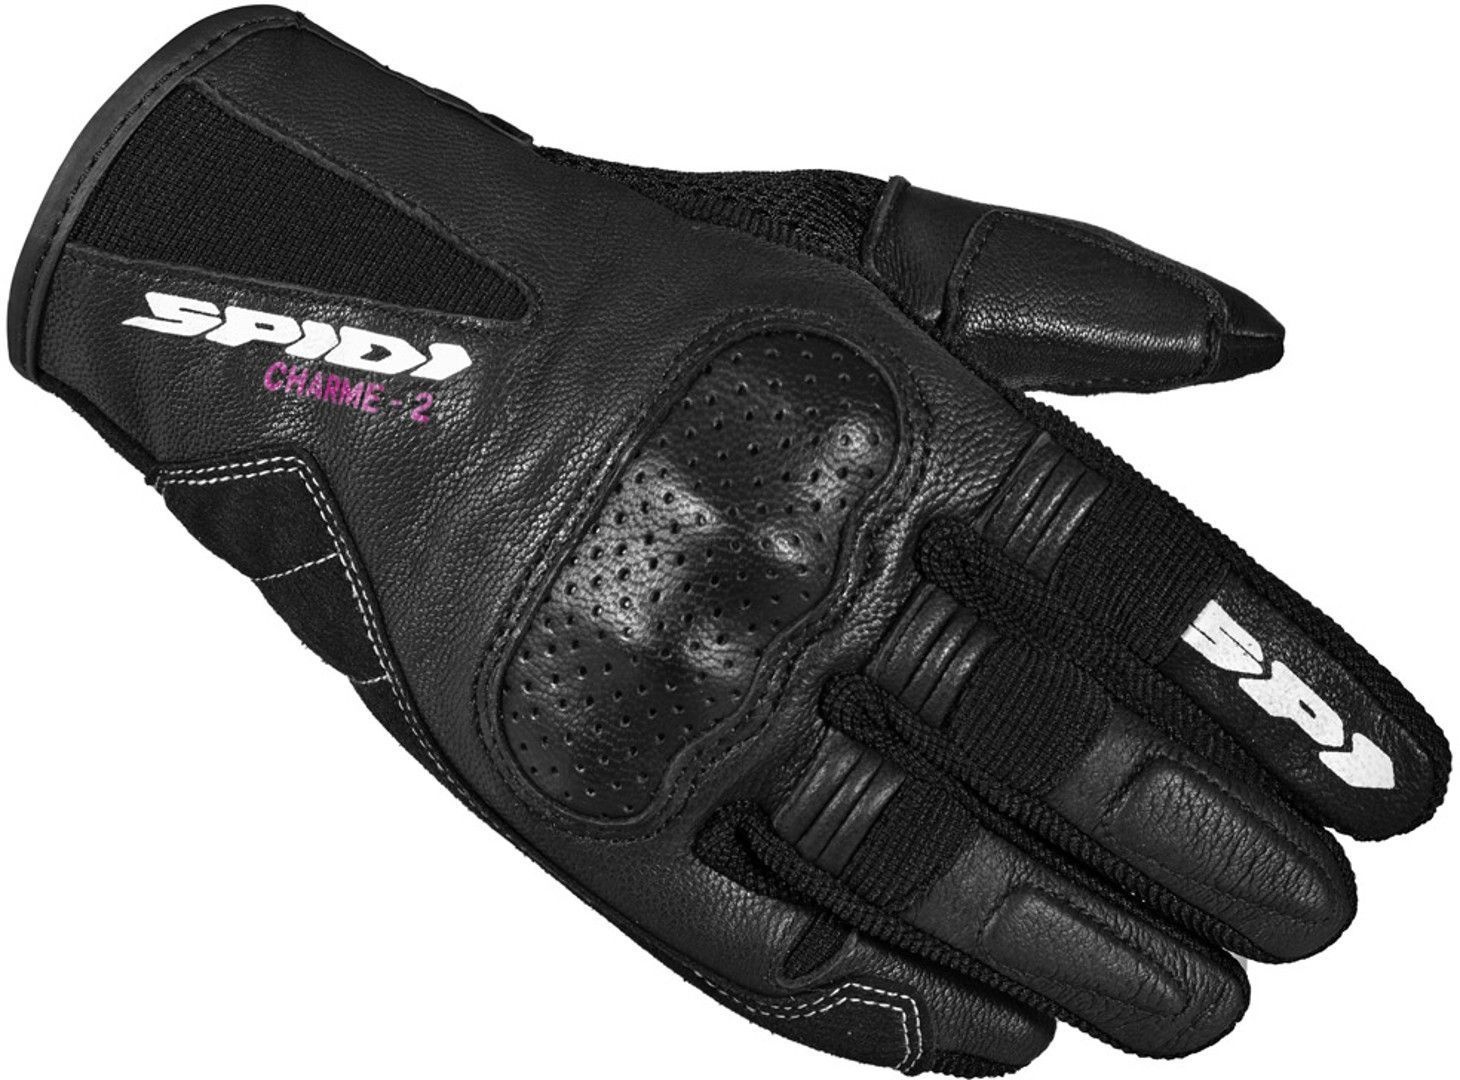 Spidi Charme 2 Damen Motorrad Handschuhe, schwarz-weiss, Größe M